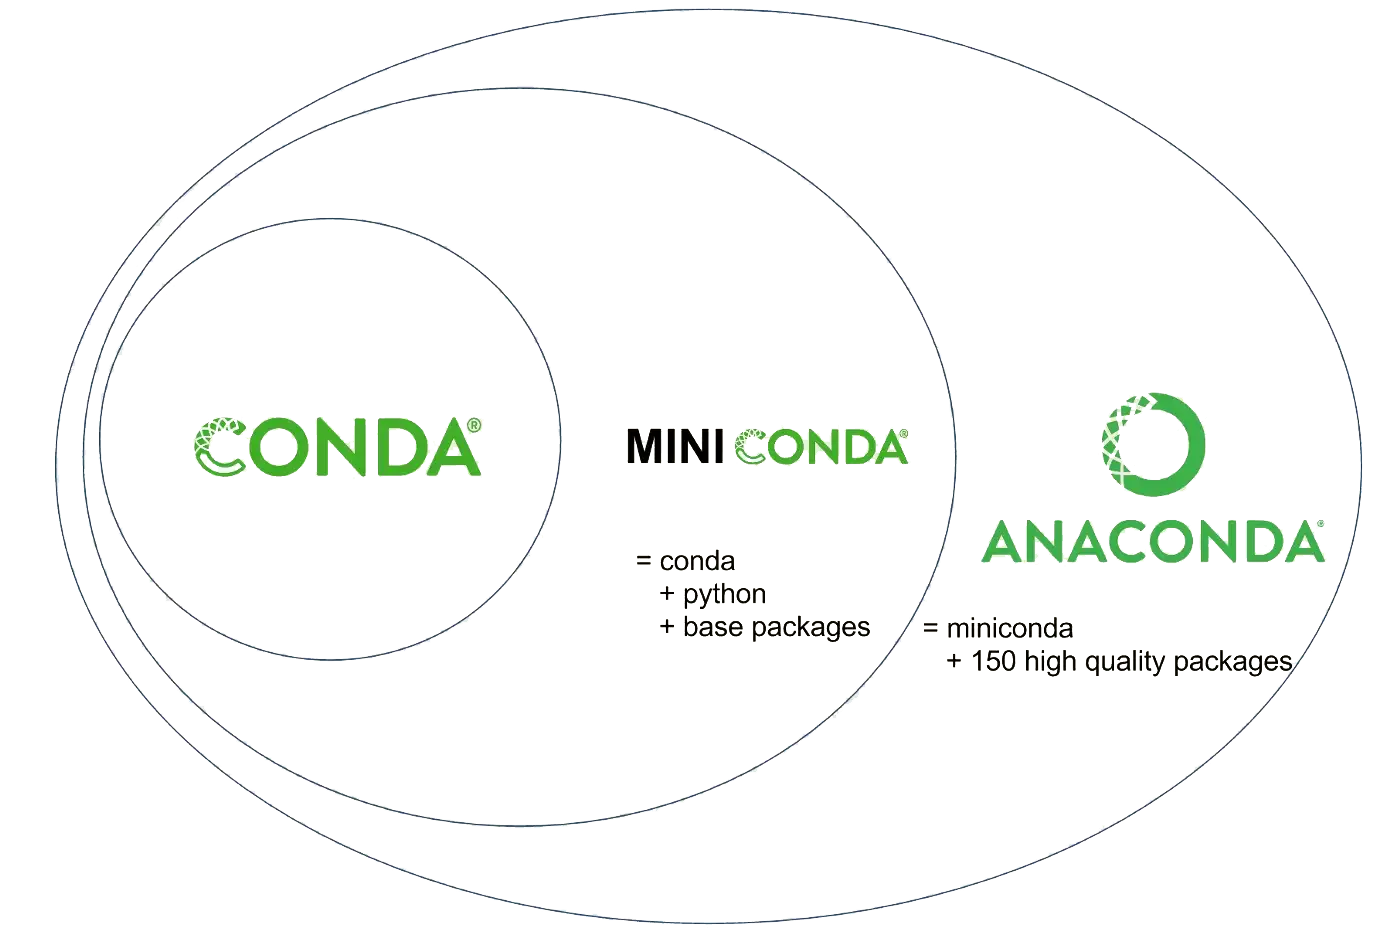 Conda vs. Anaconda vs. Miniconda